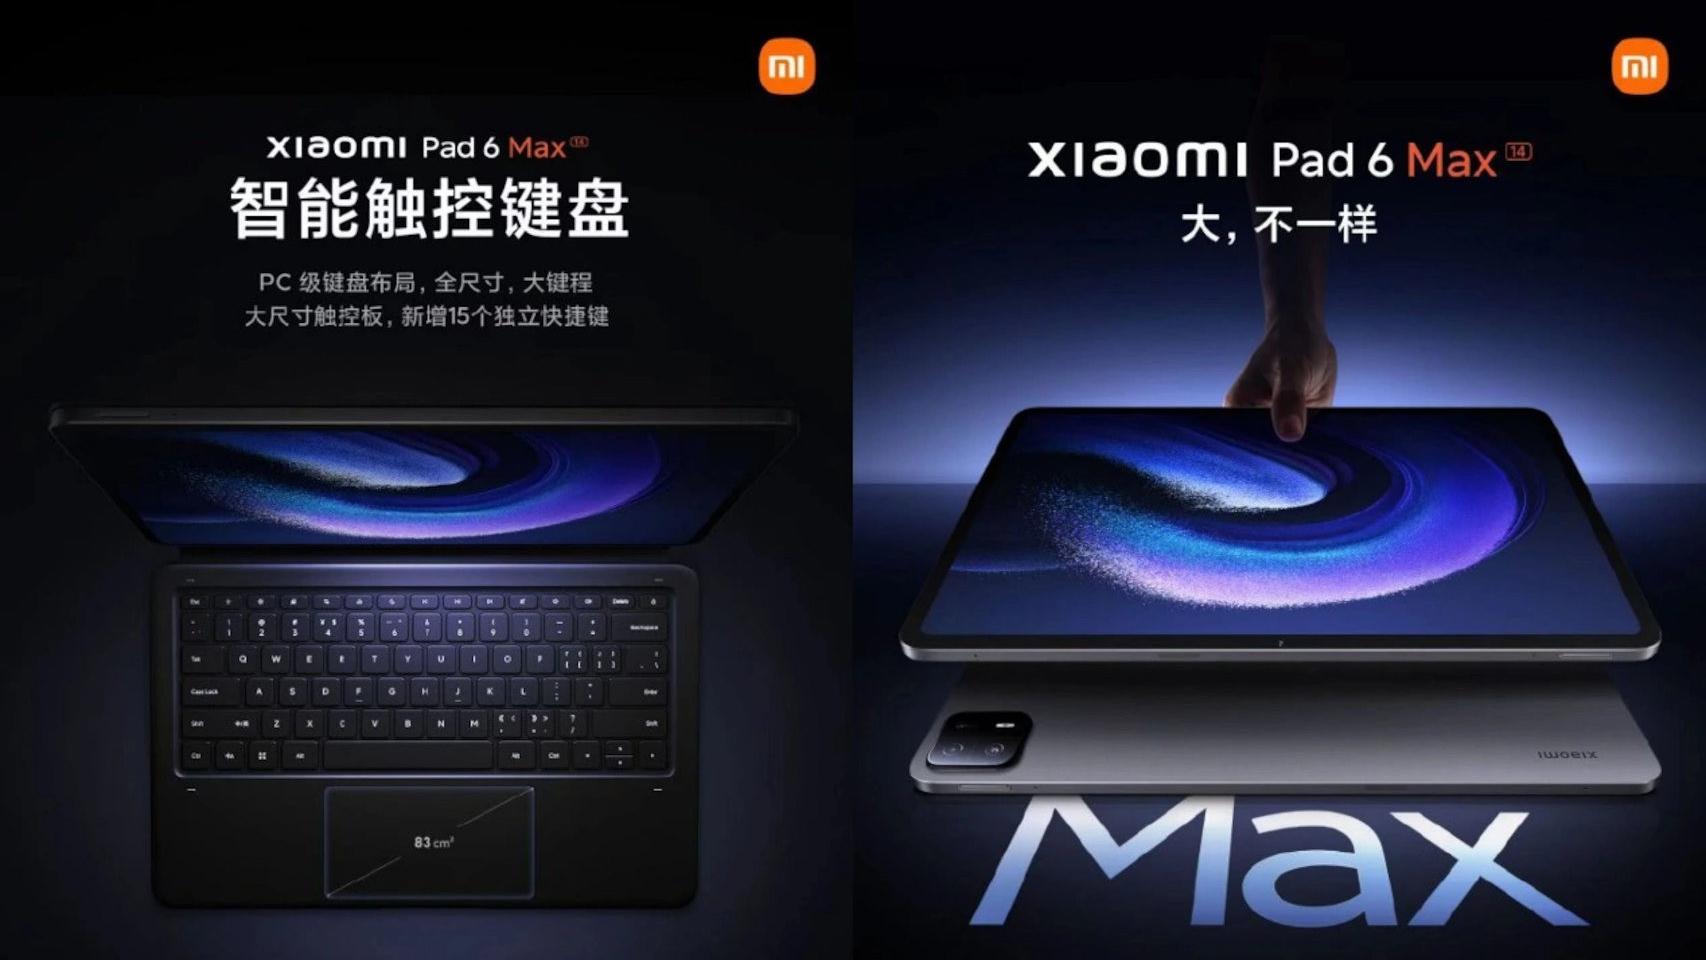 La Xiaomi Pad 6 Max